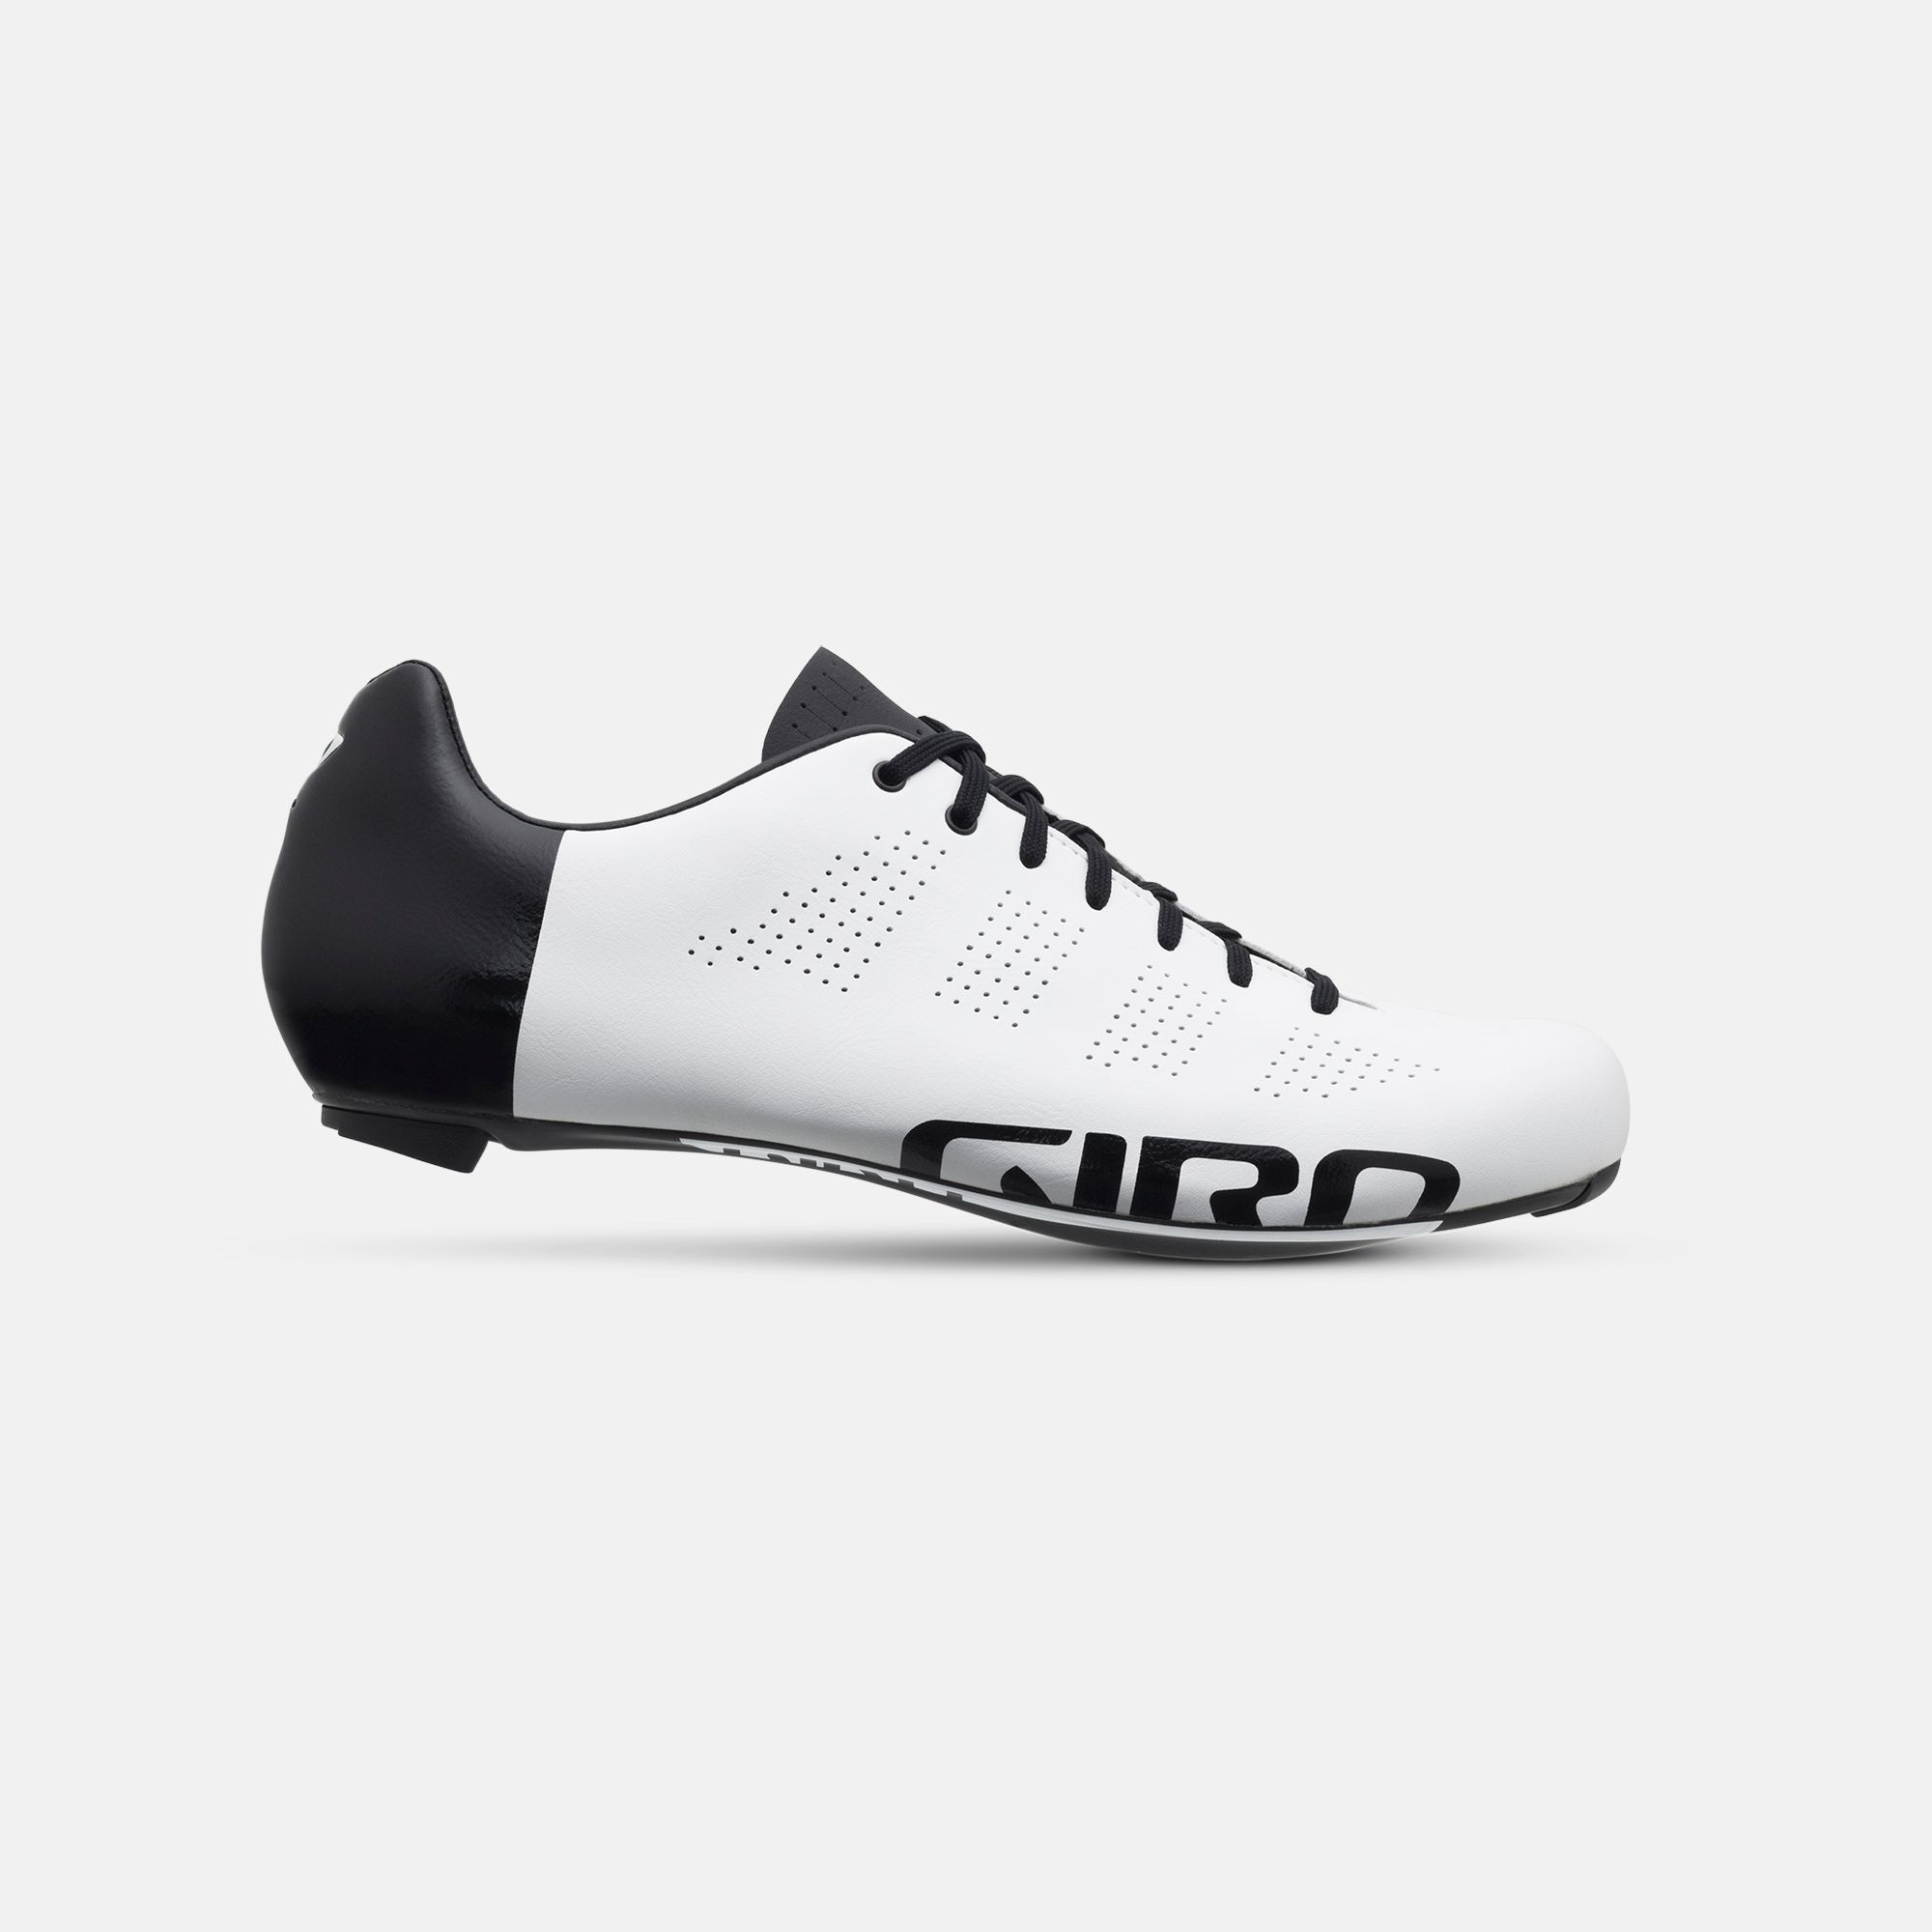 Empire ACC Shoe | Giro